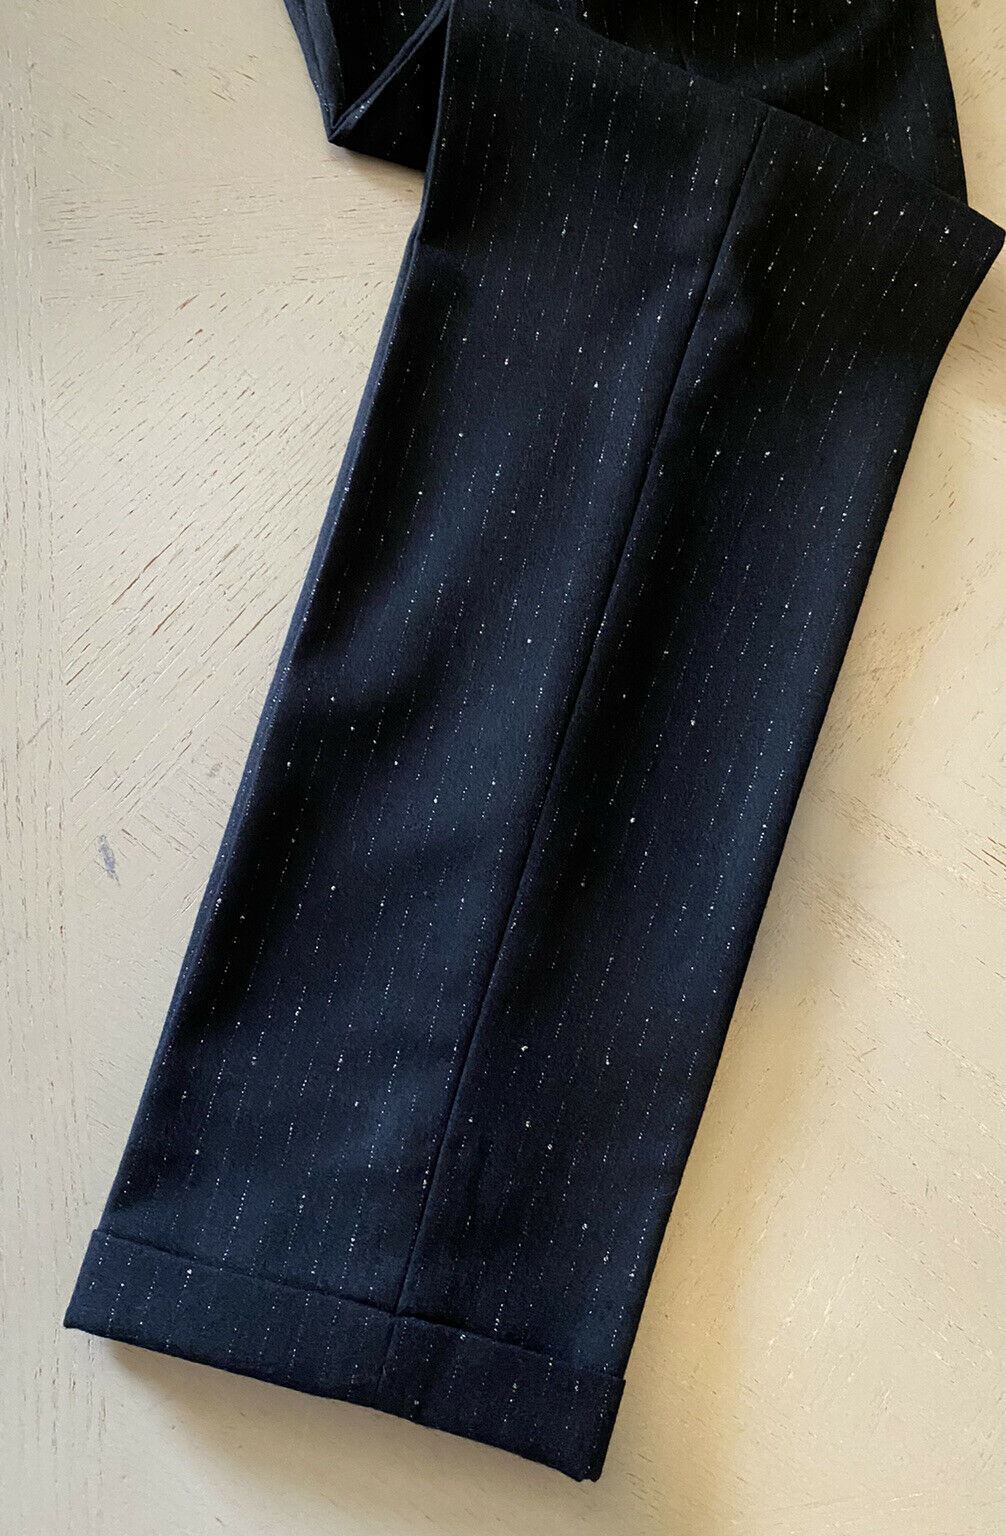 NWT $1190 Saint Laurent Men’s Dress Pants  Black 34 US/50 Eu Italy